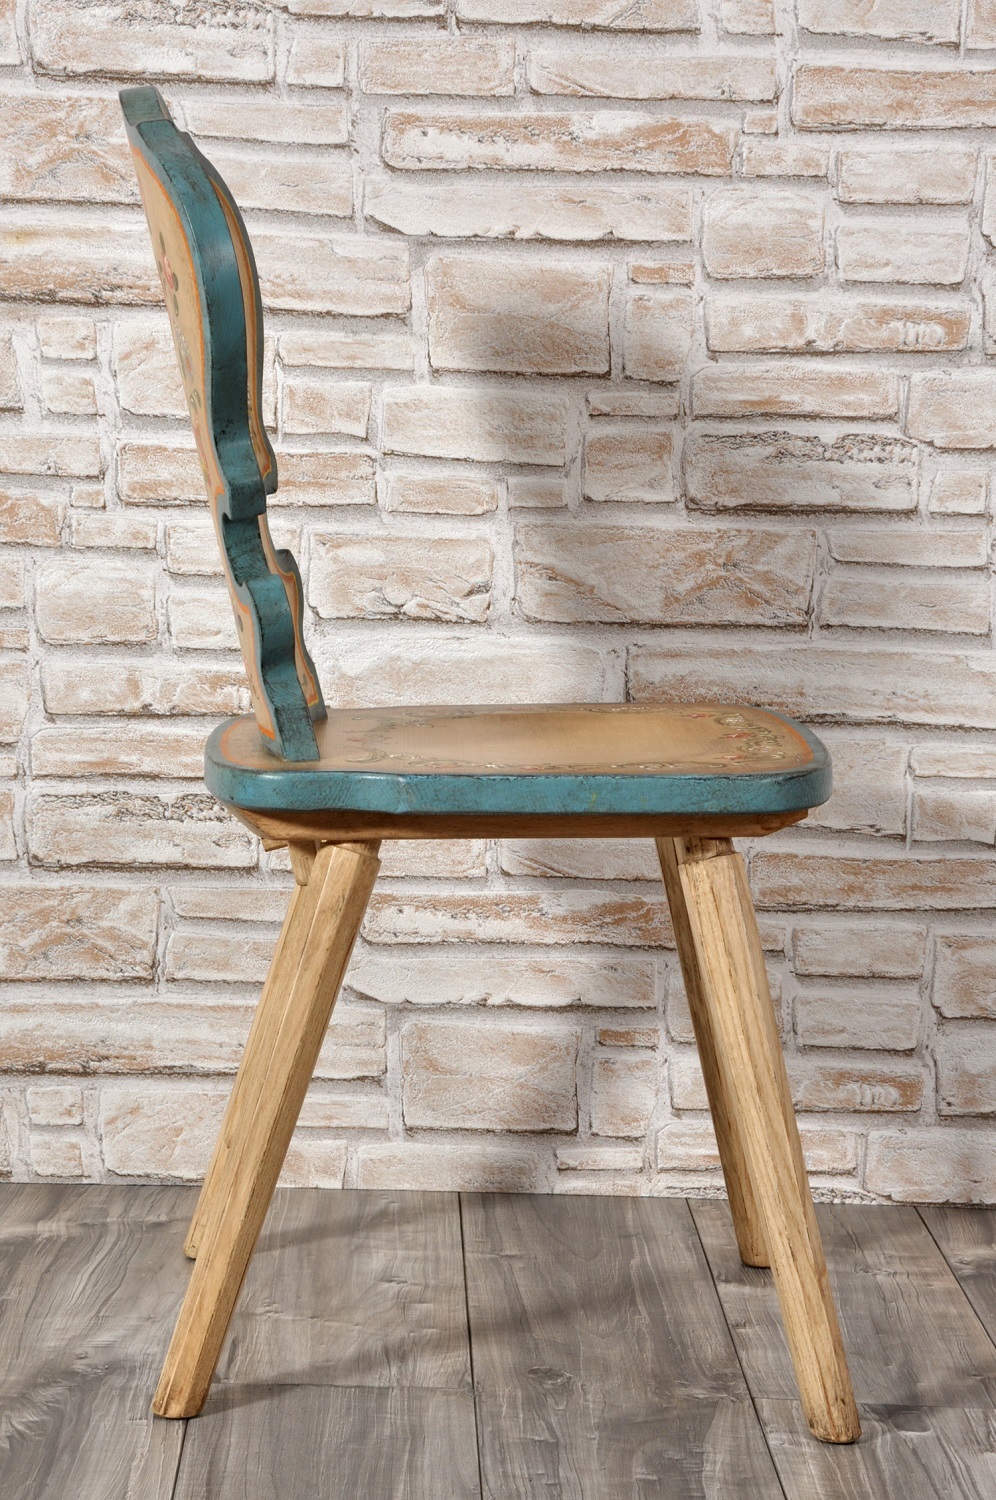 sedia rustica con cuore decorata e realizzata per lussuose case di montagna ed esclusivi arredi riproducibile su misura essendo un manufatto made in italy